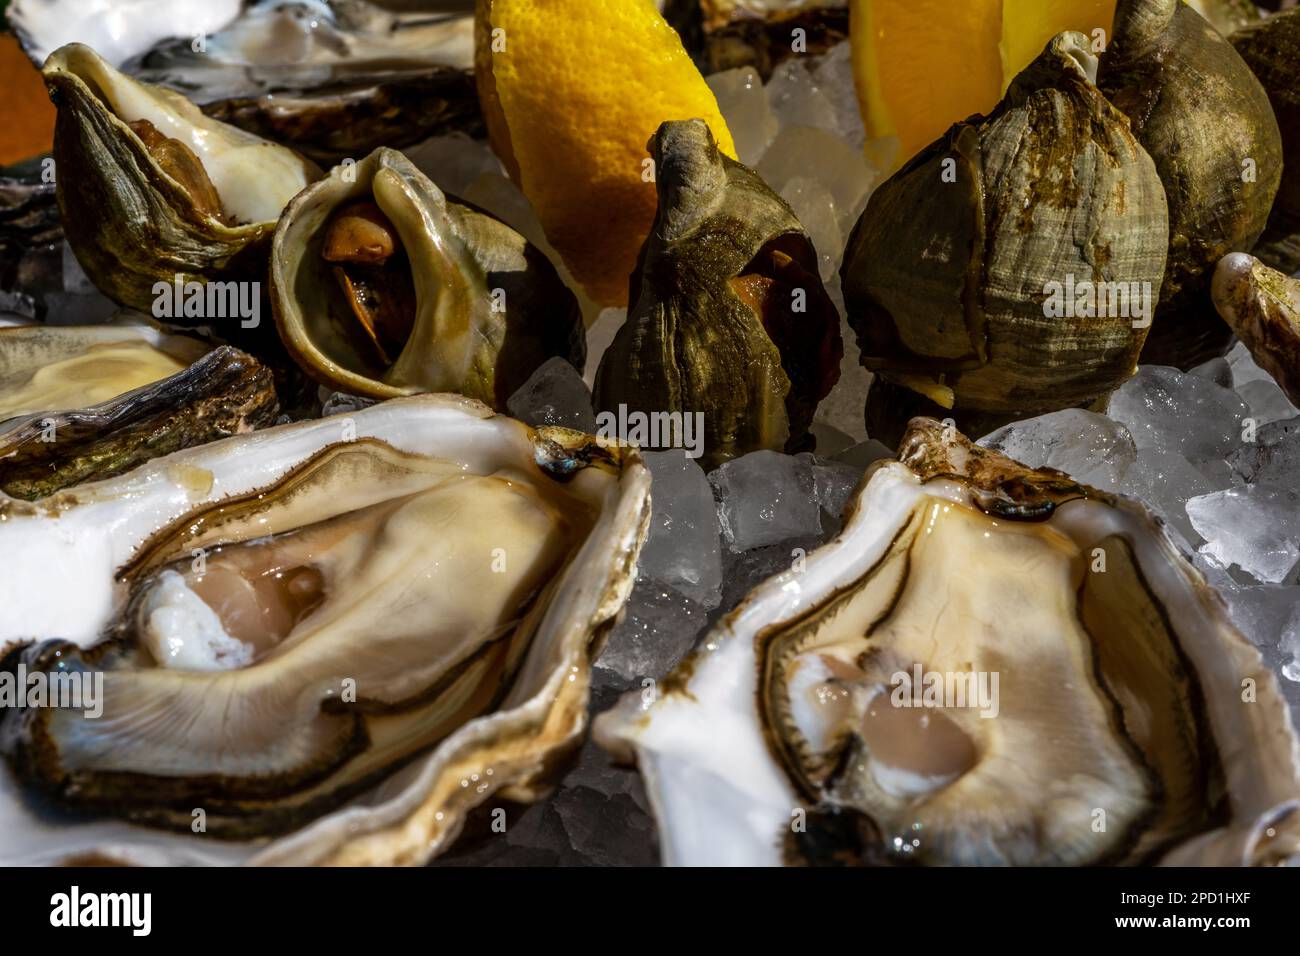 Ostriche fresche e piatto di whelk con limone sul ghiaccio. Foto di alta qualità Foto Stock